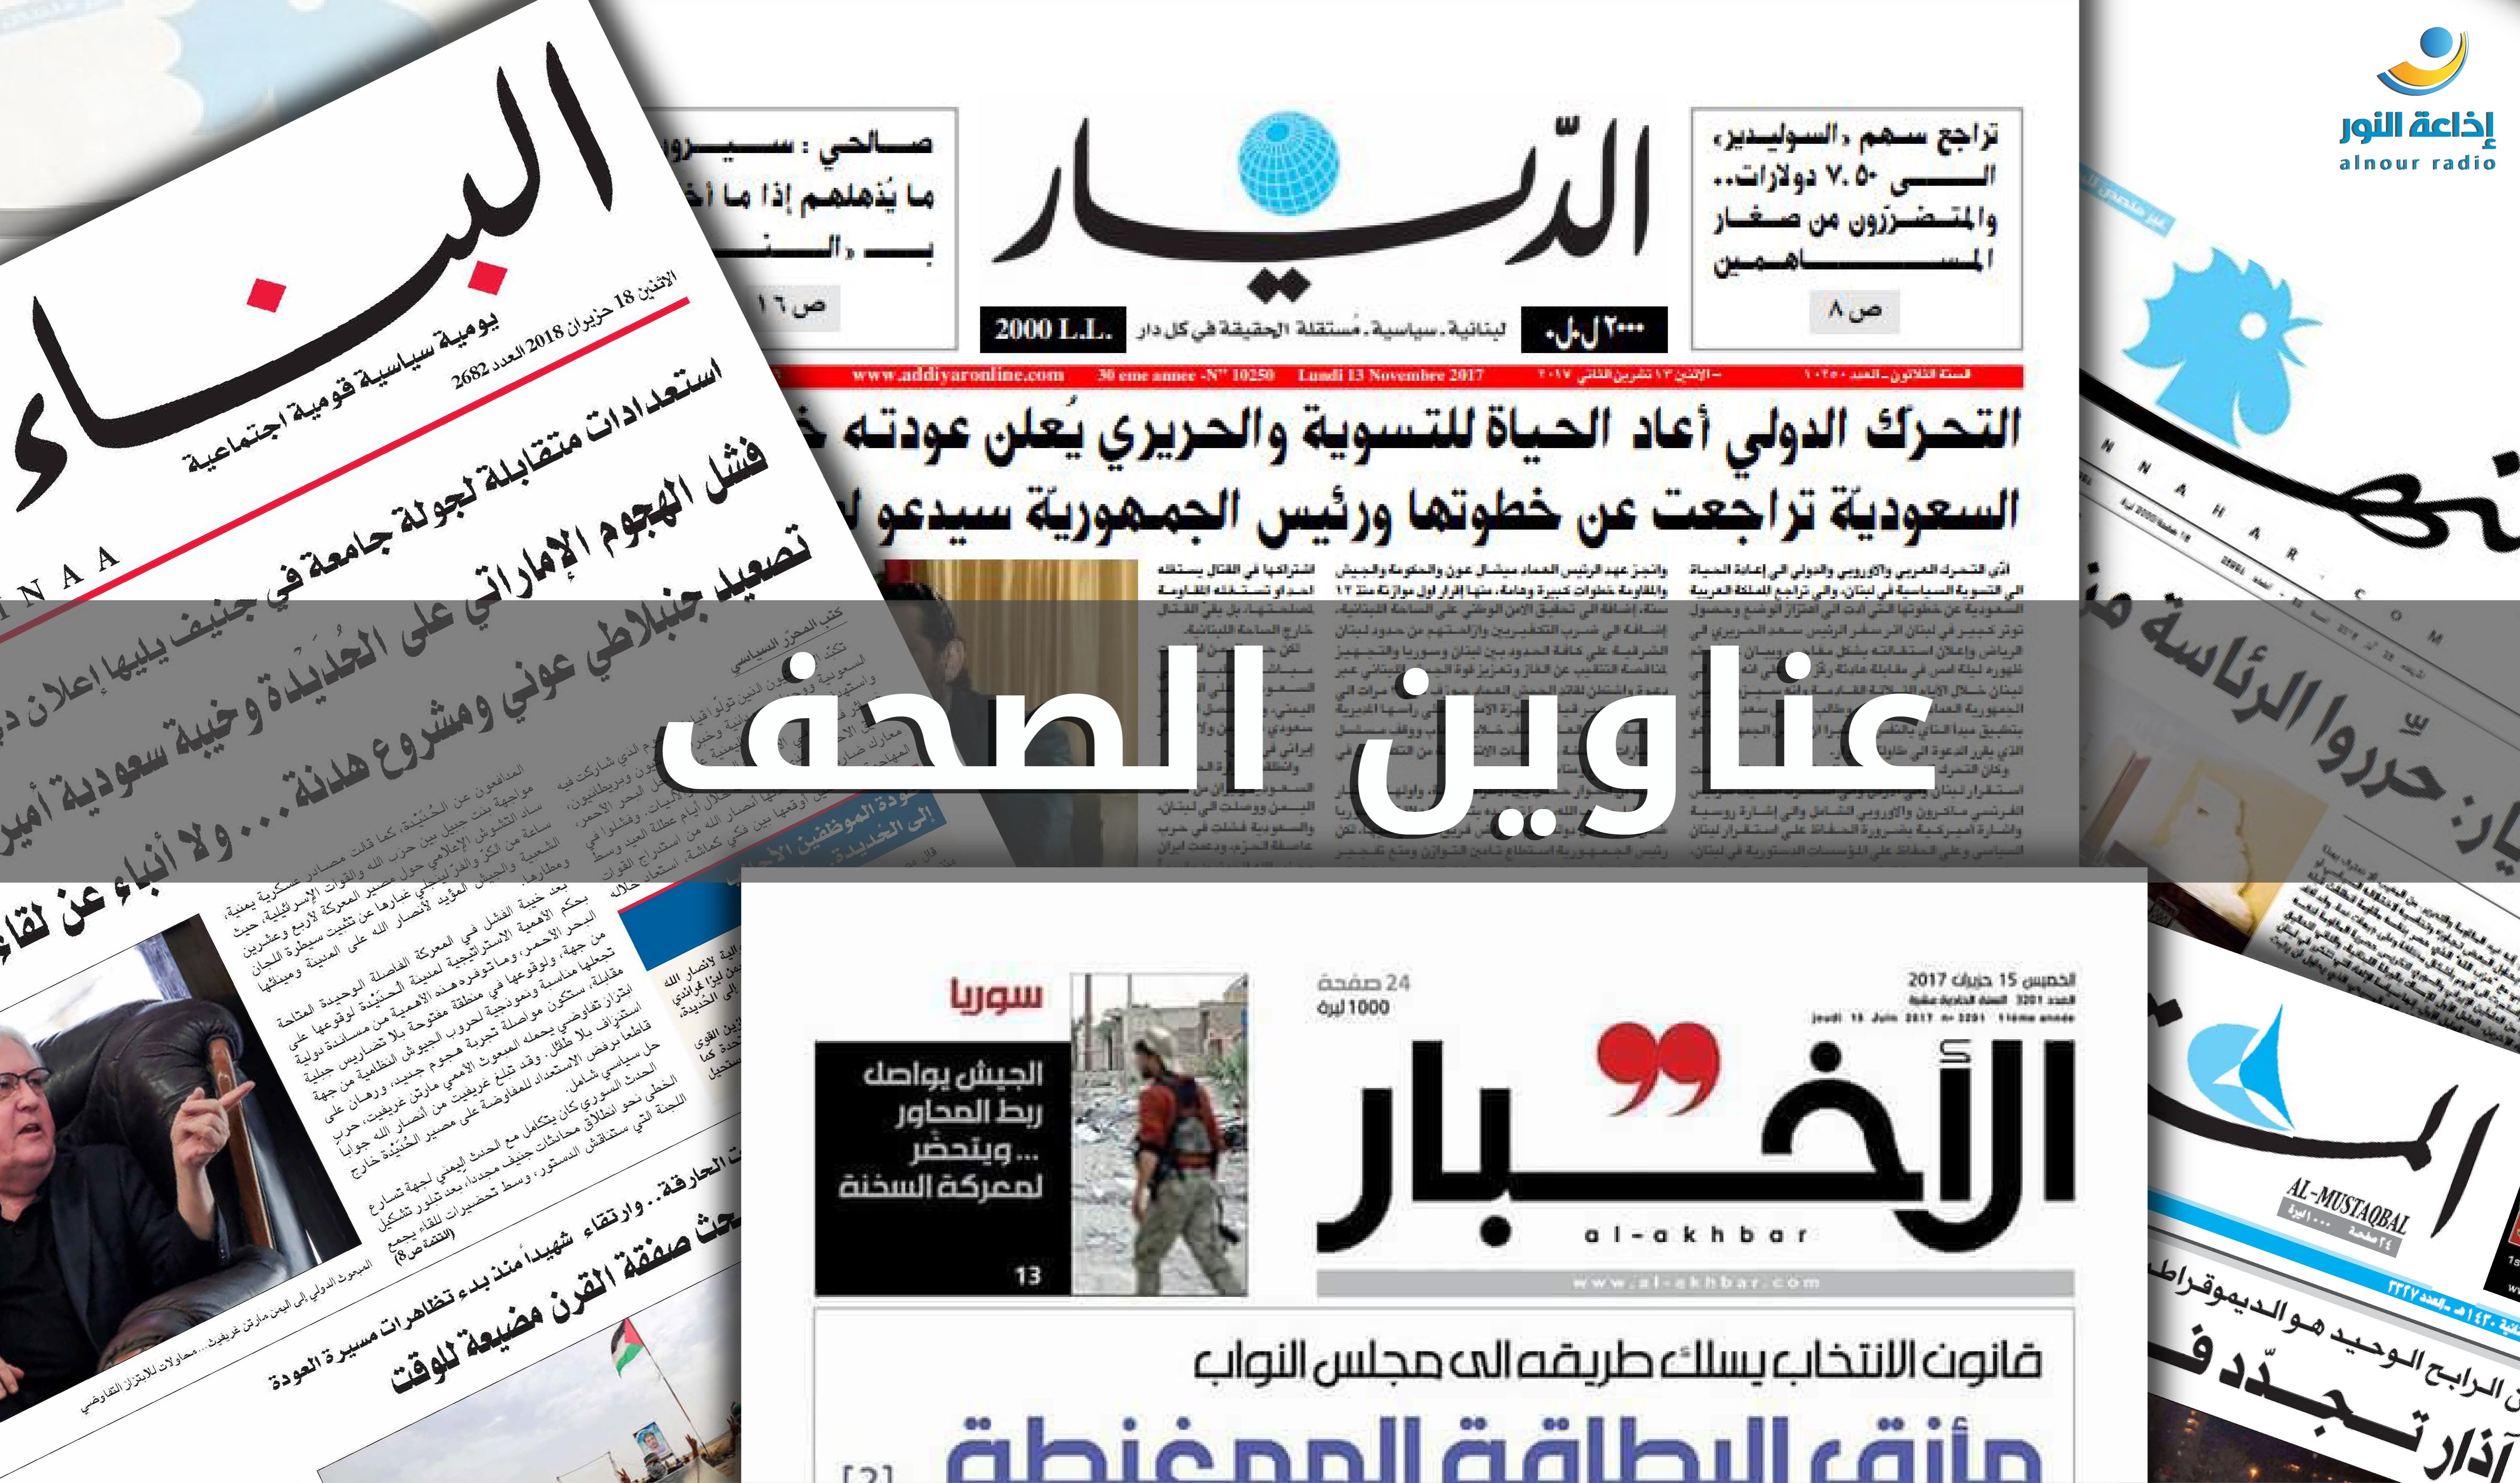 اهم عناوين الصحف اللبنانية لصباح اليوم ؟